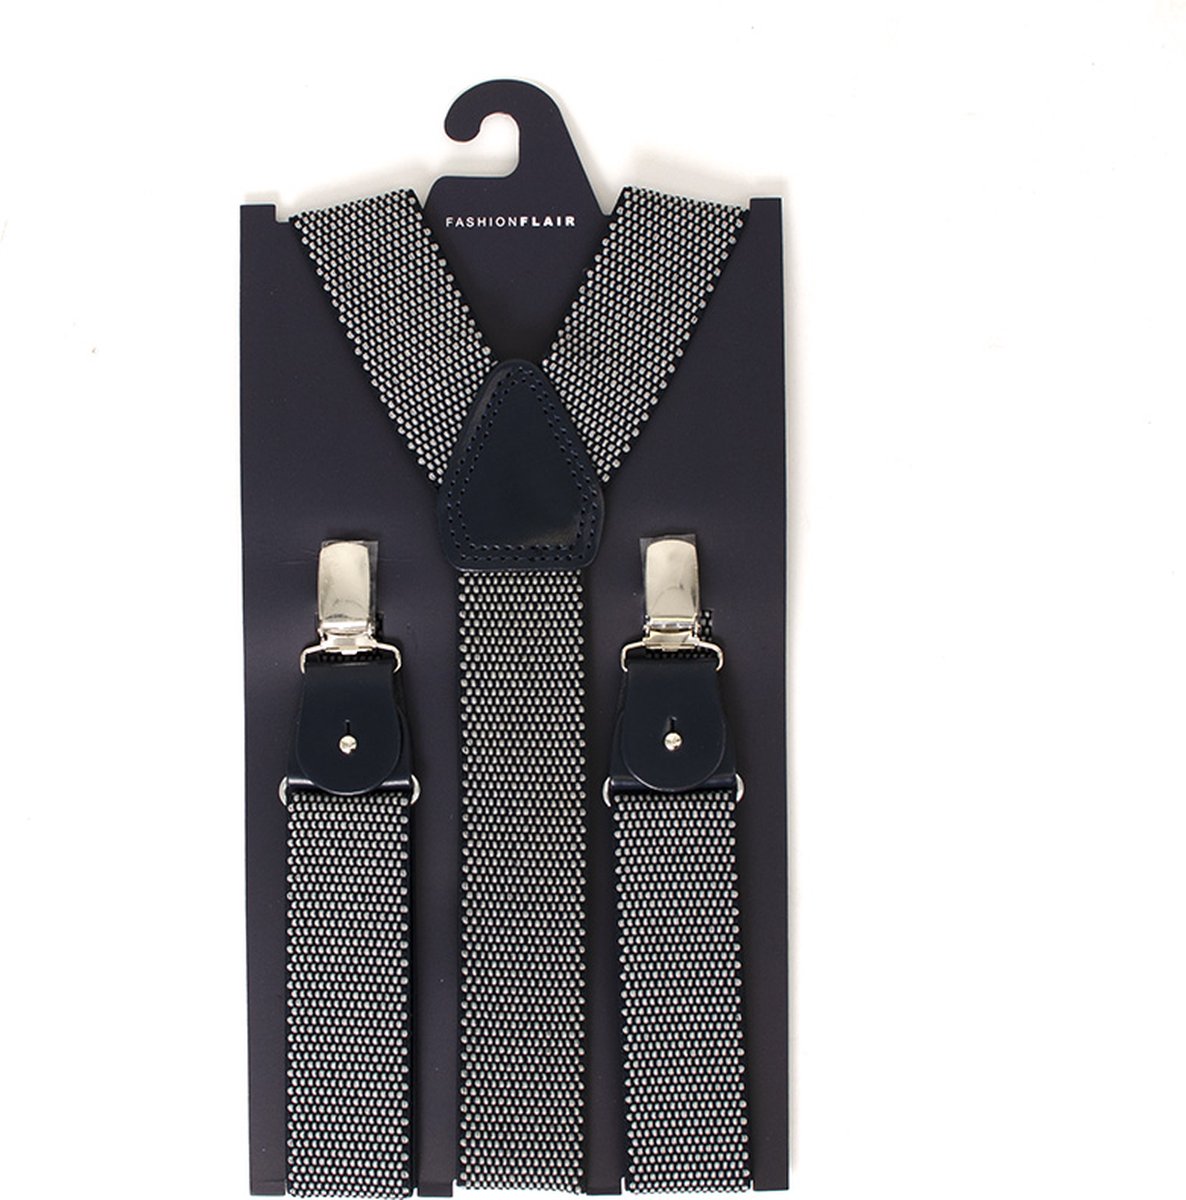 Bretels - Bretels heren - Blauwe bretels - Verstelbare bretellen - Bretellen met clips - Bretels met Print